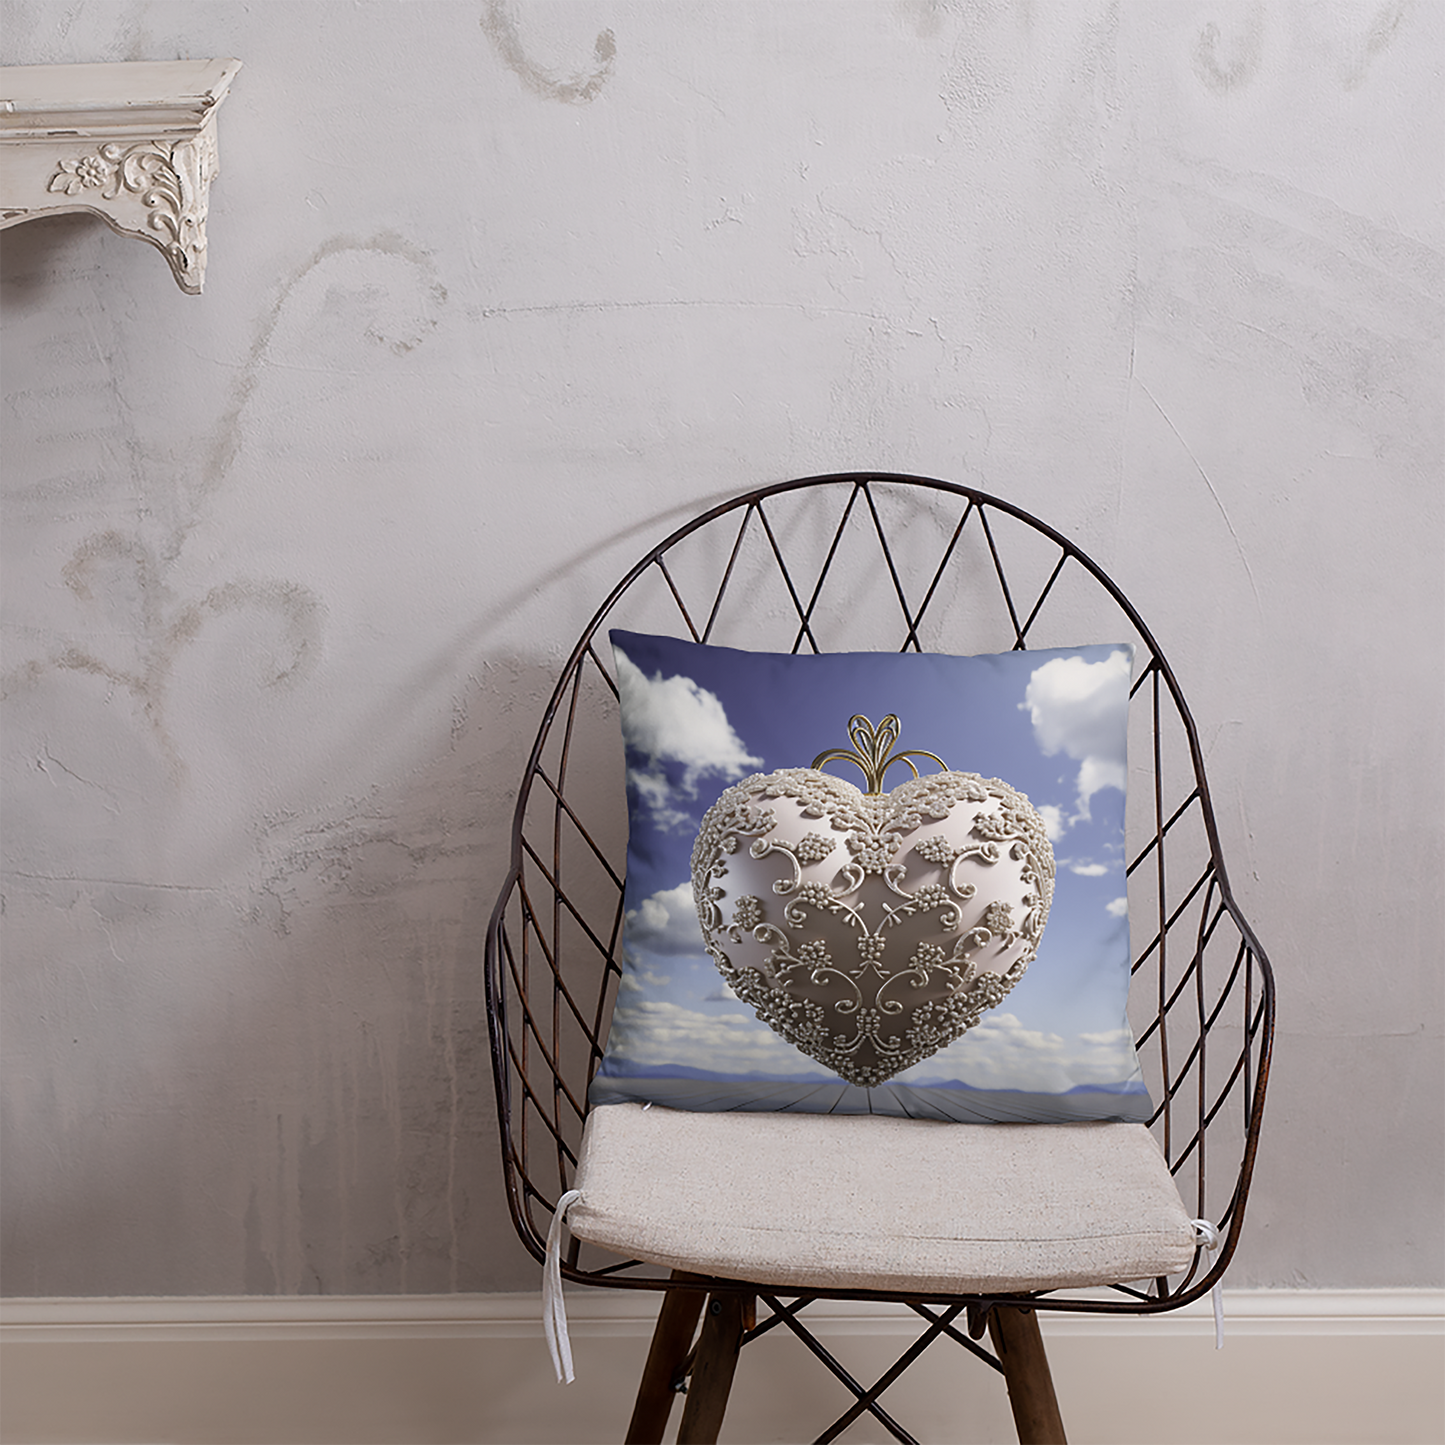 Heart Throw Pillow Opulent Glass Heart Polyester Decorative Cushion 18x18